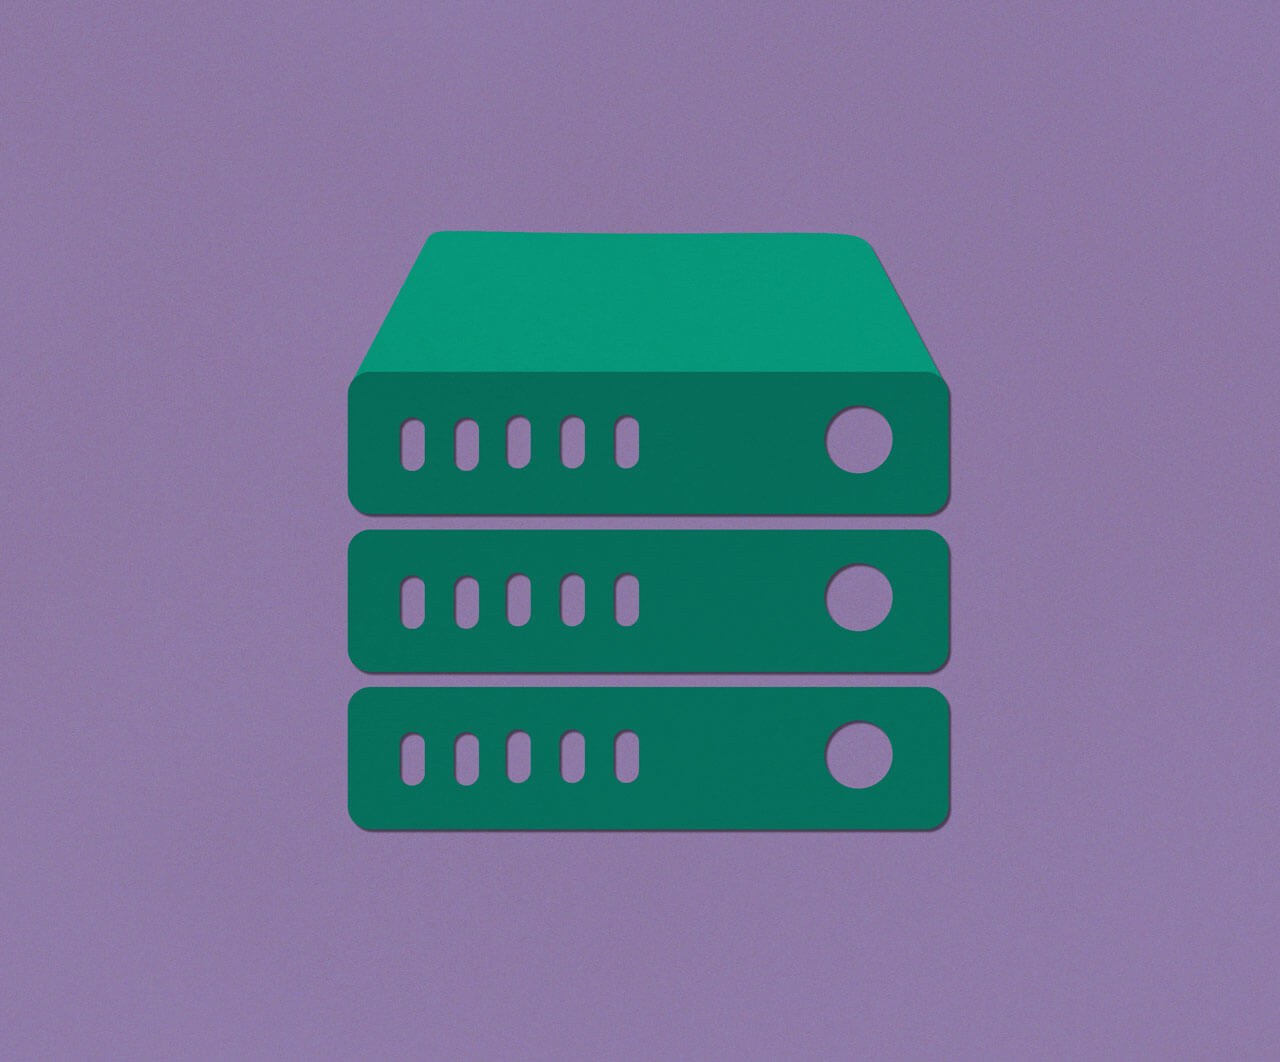 Ein weiteres Symbolbild im neuen Design von dedica: drei grüne Server